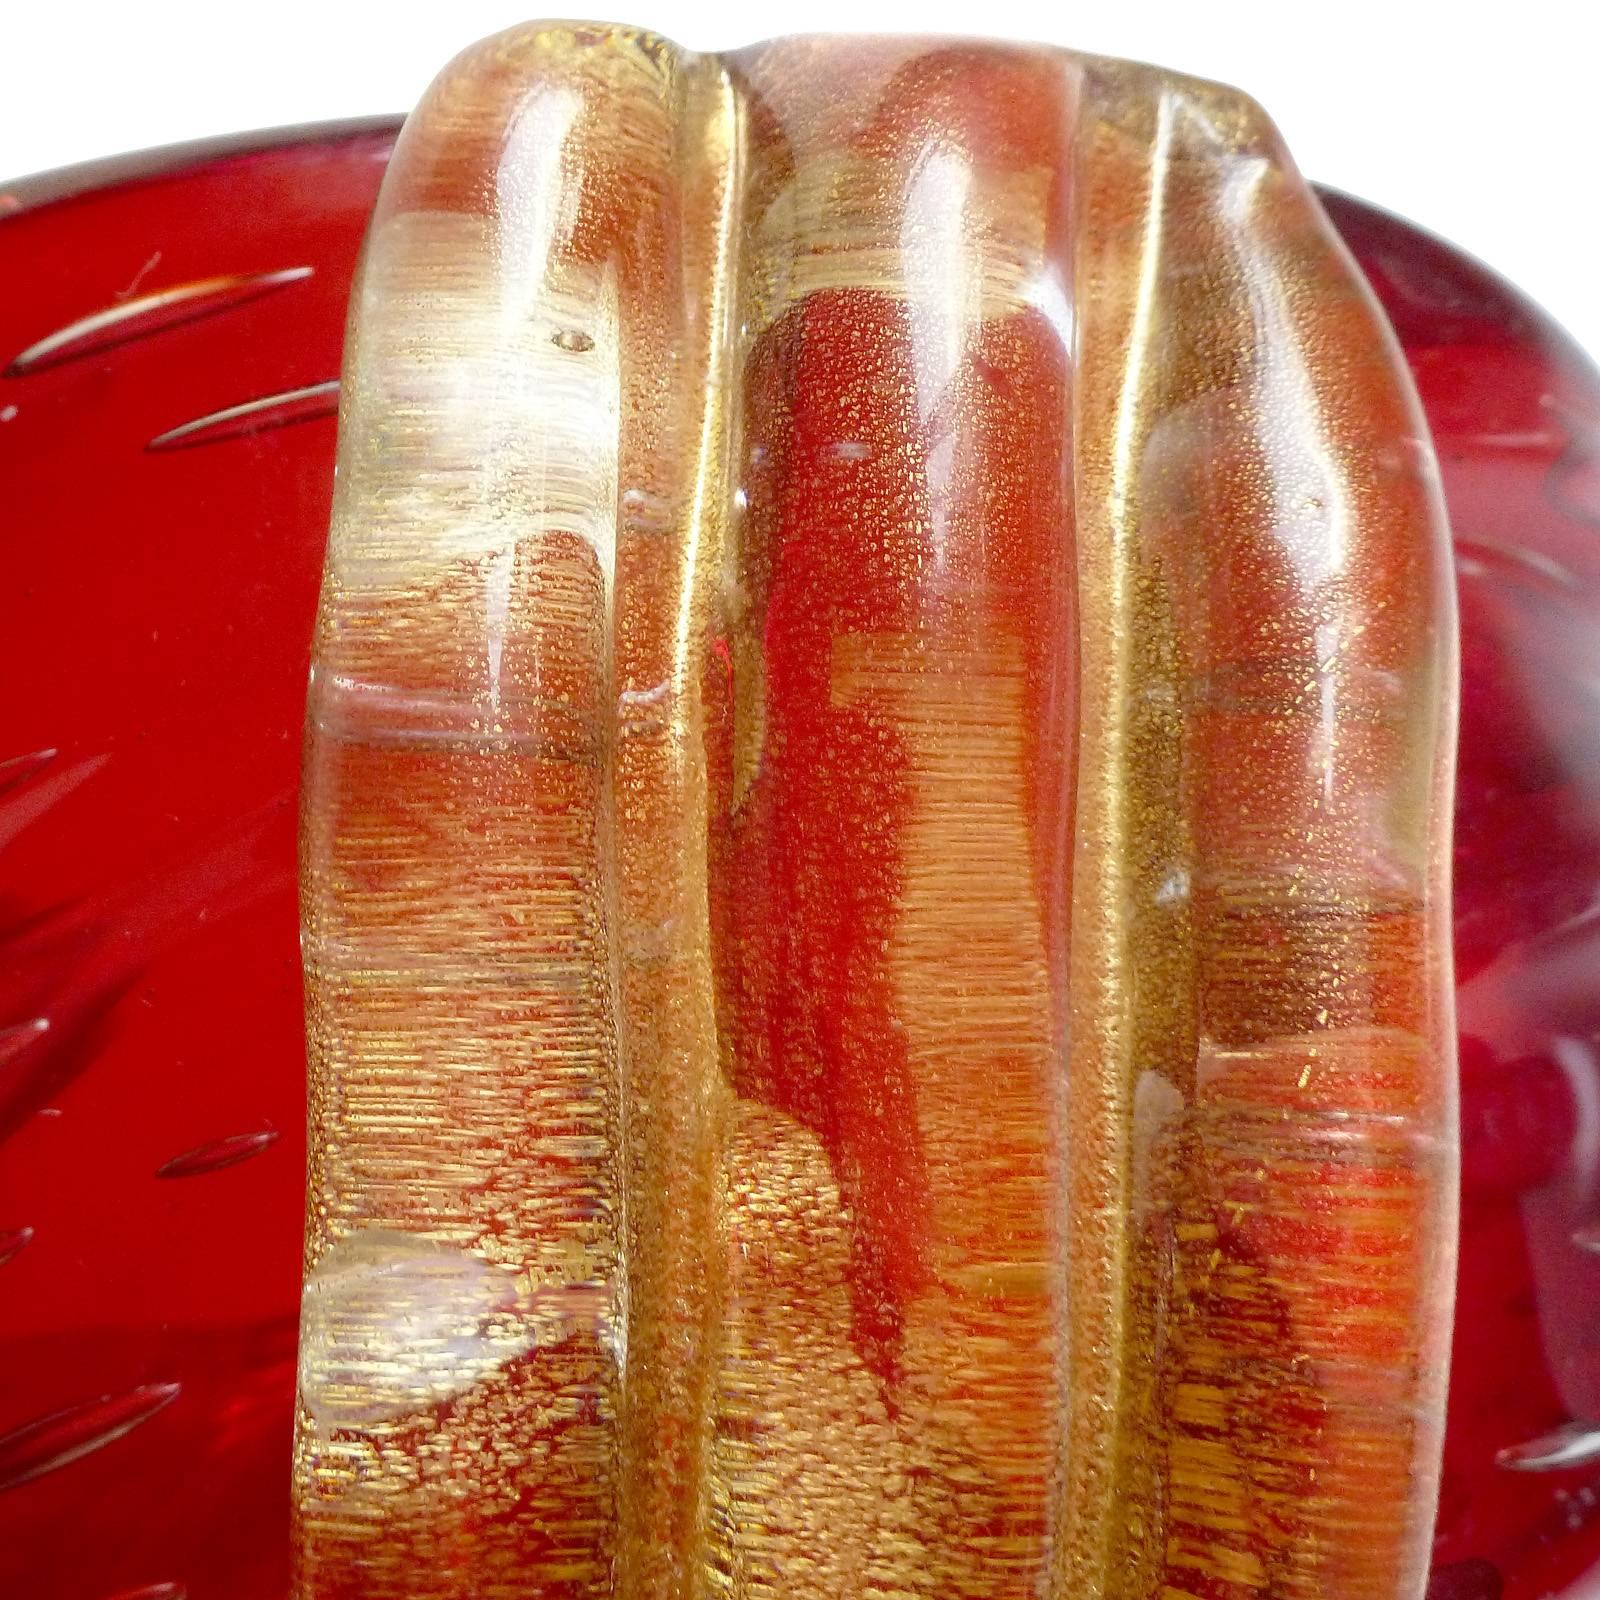 Hand-Crafted Barovier Toso Murano Red Orange Amberina Gold Italian Art Glass Bowl